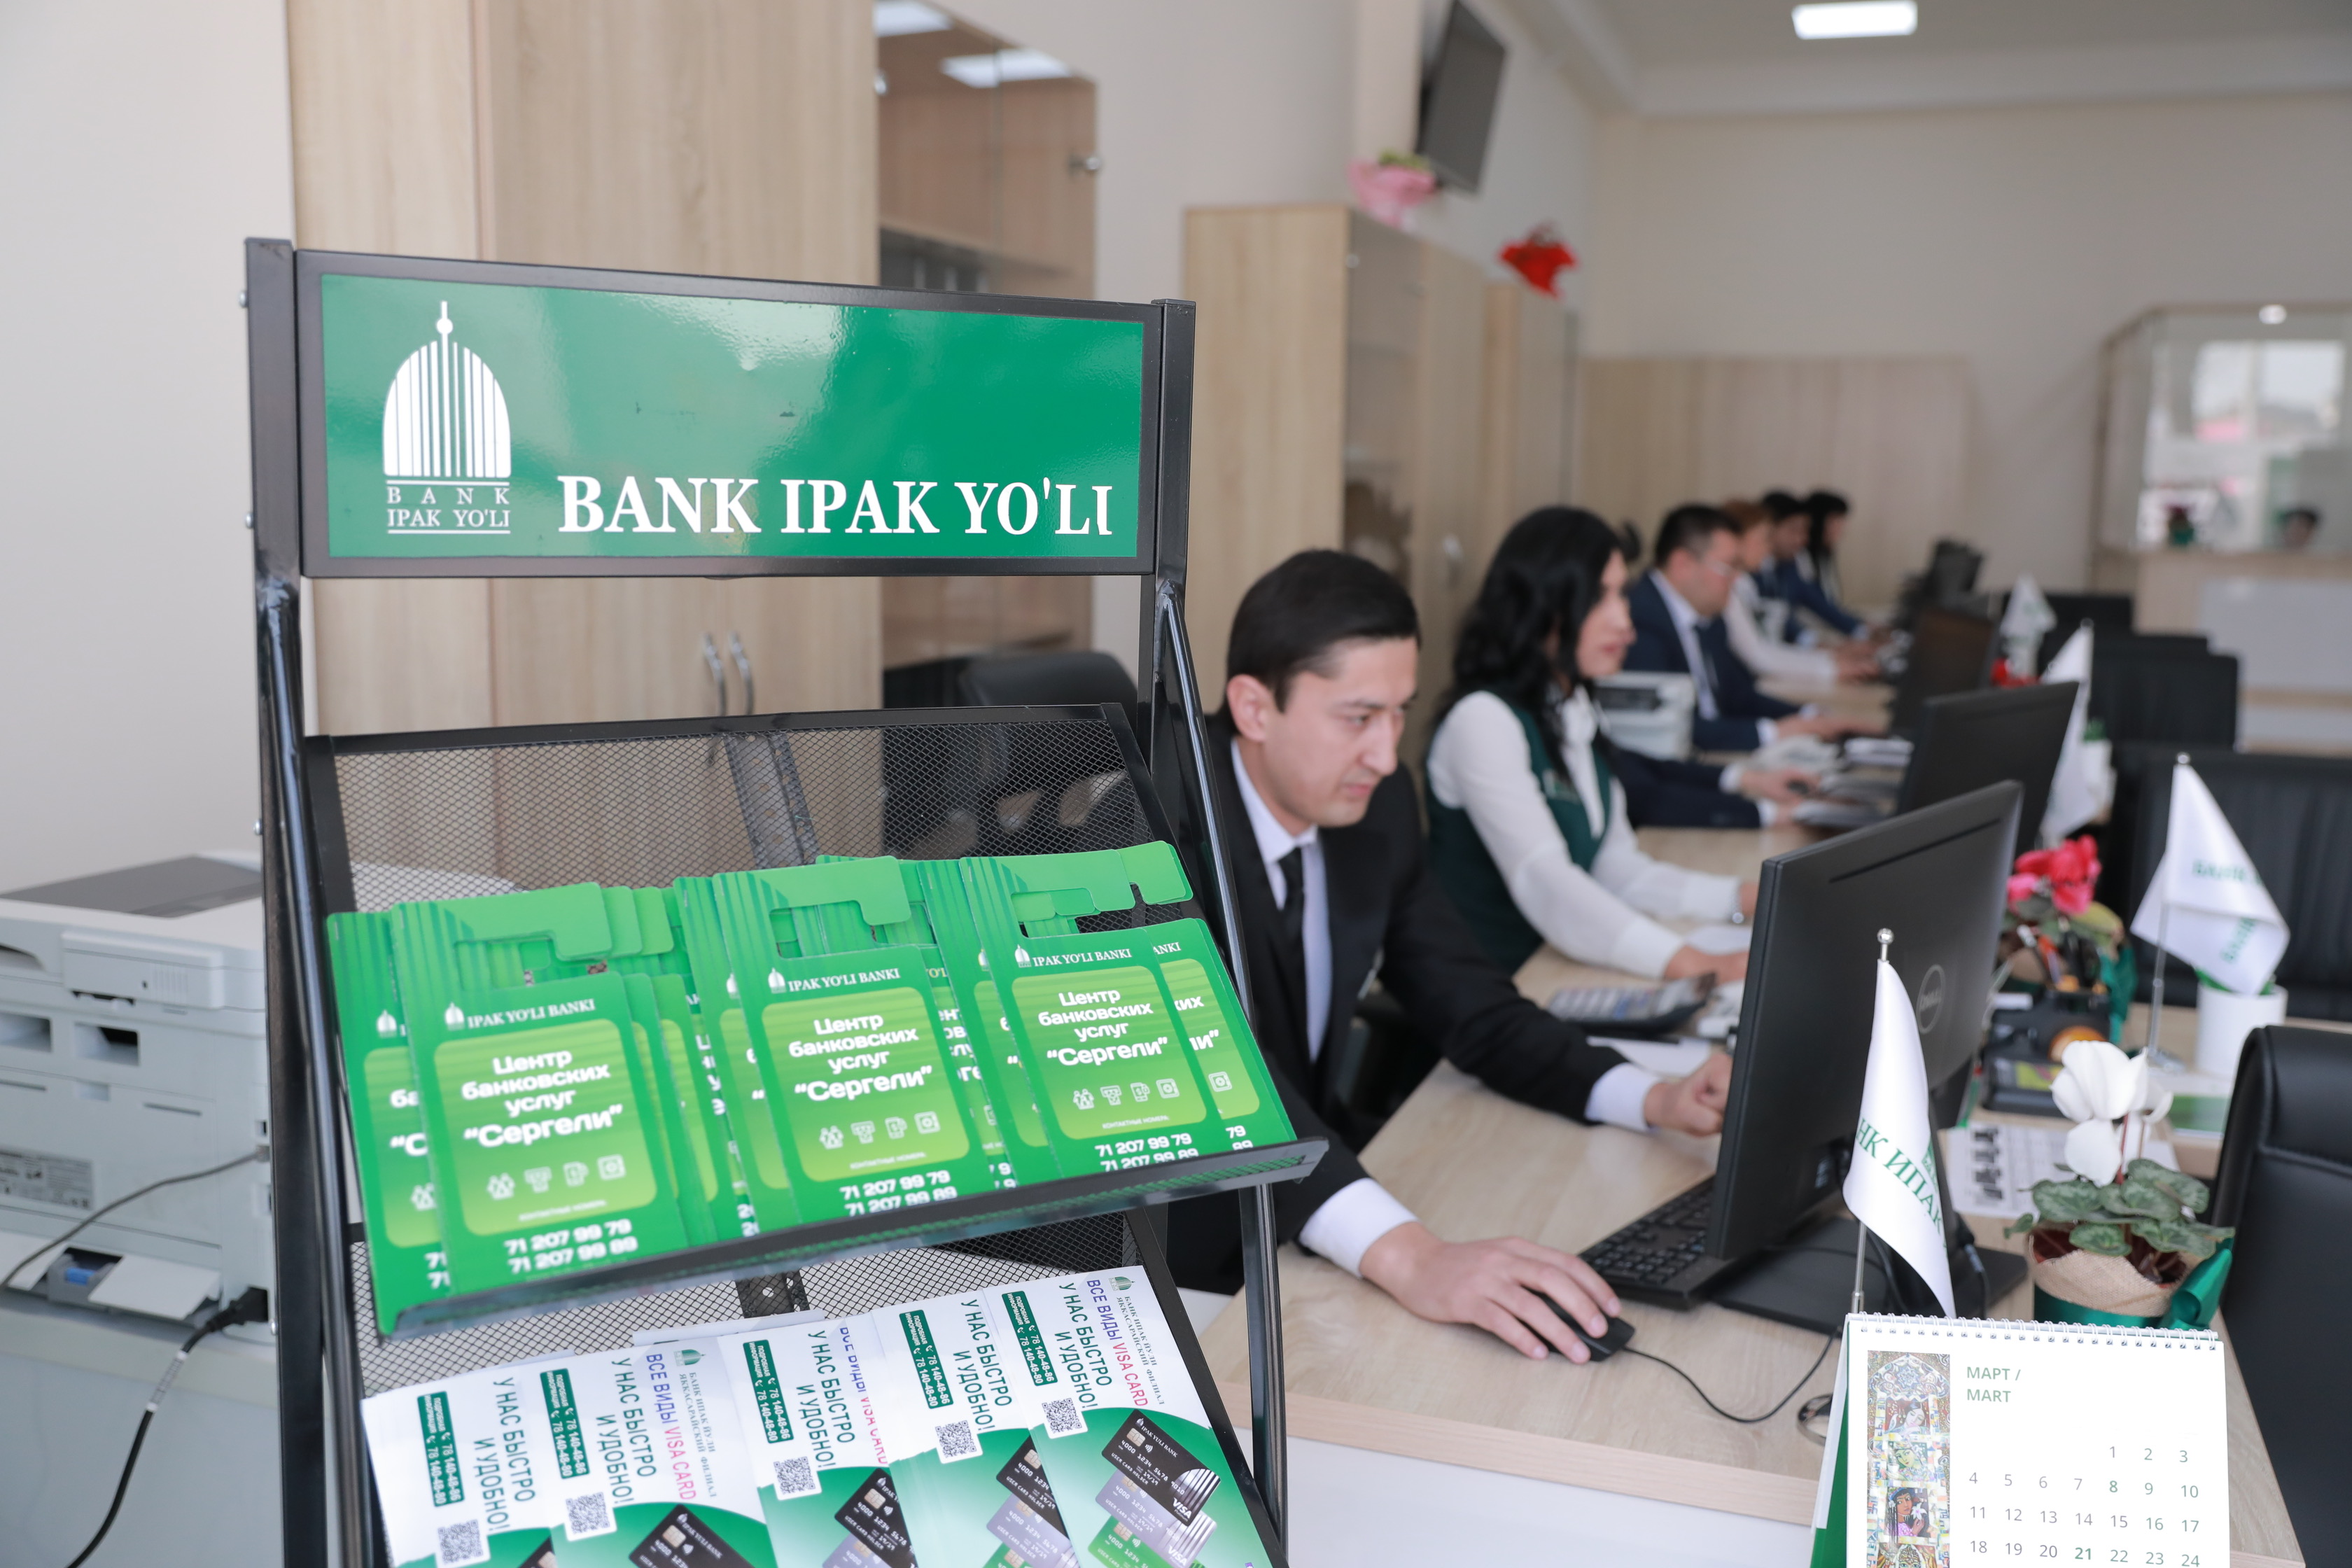 Российские банки в узбекистане. Ипак банк Узбекистан. Банк Ипак йули в Ташкенте. Банк Ипак йули офис. Ipak Yuli Bank logo.